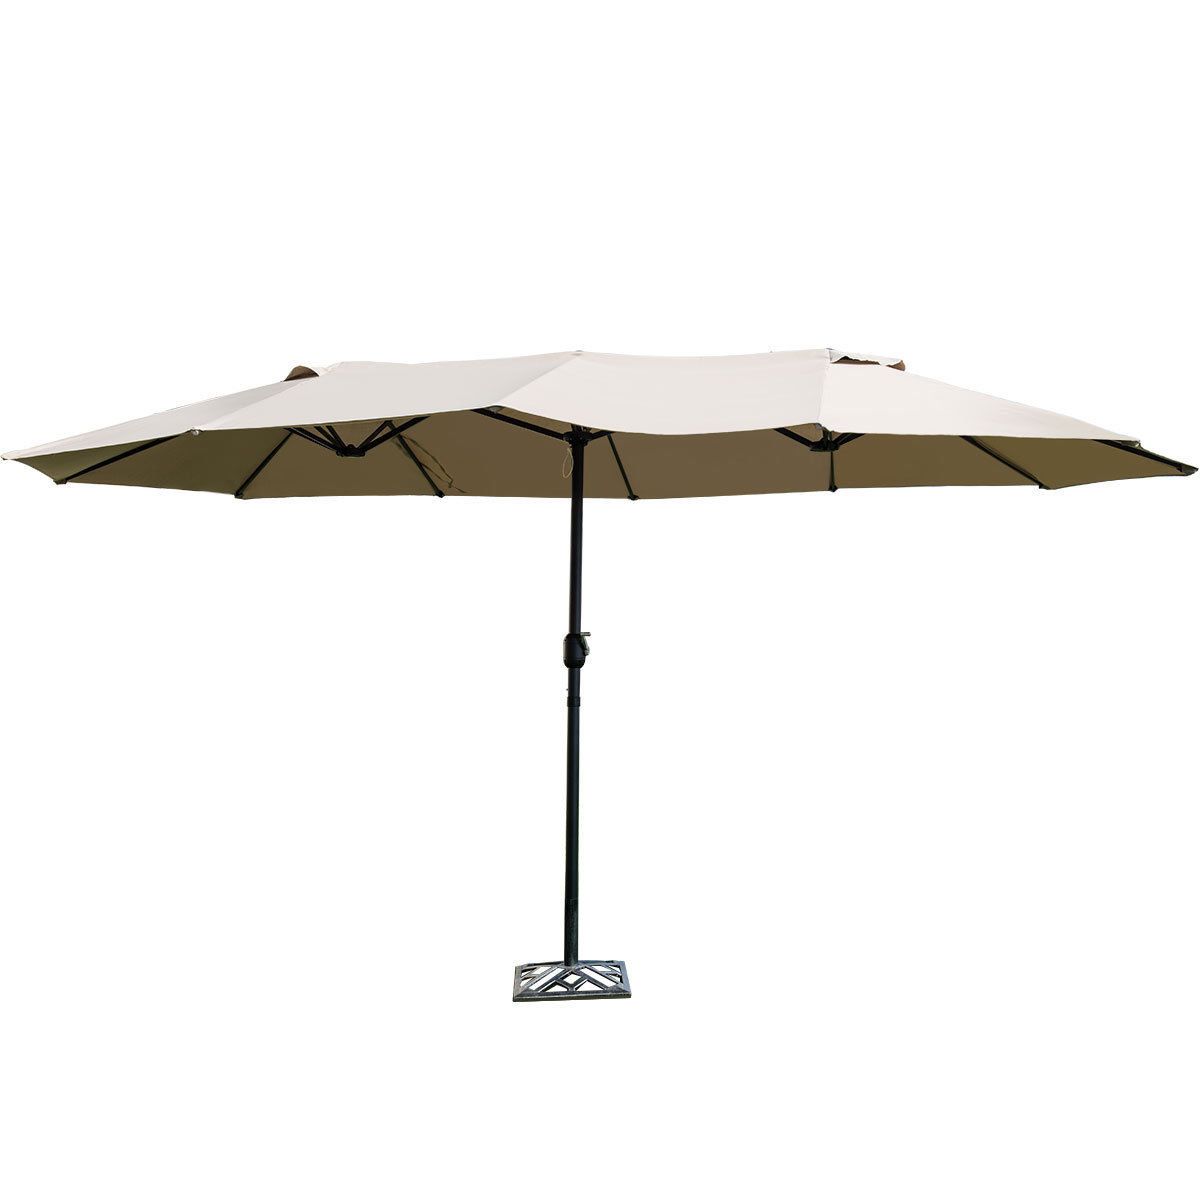 Lagasse Market Umbrella Regarding Best And Newest Lagasse Market Umbrellas (View 1 of 20)